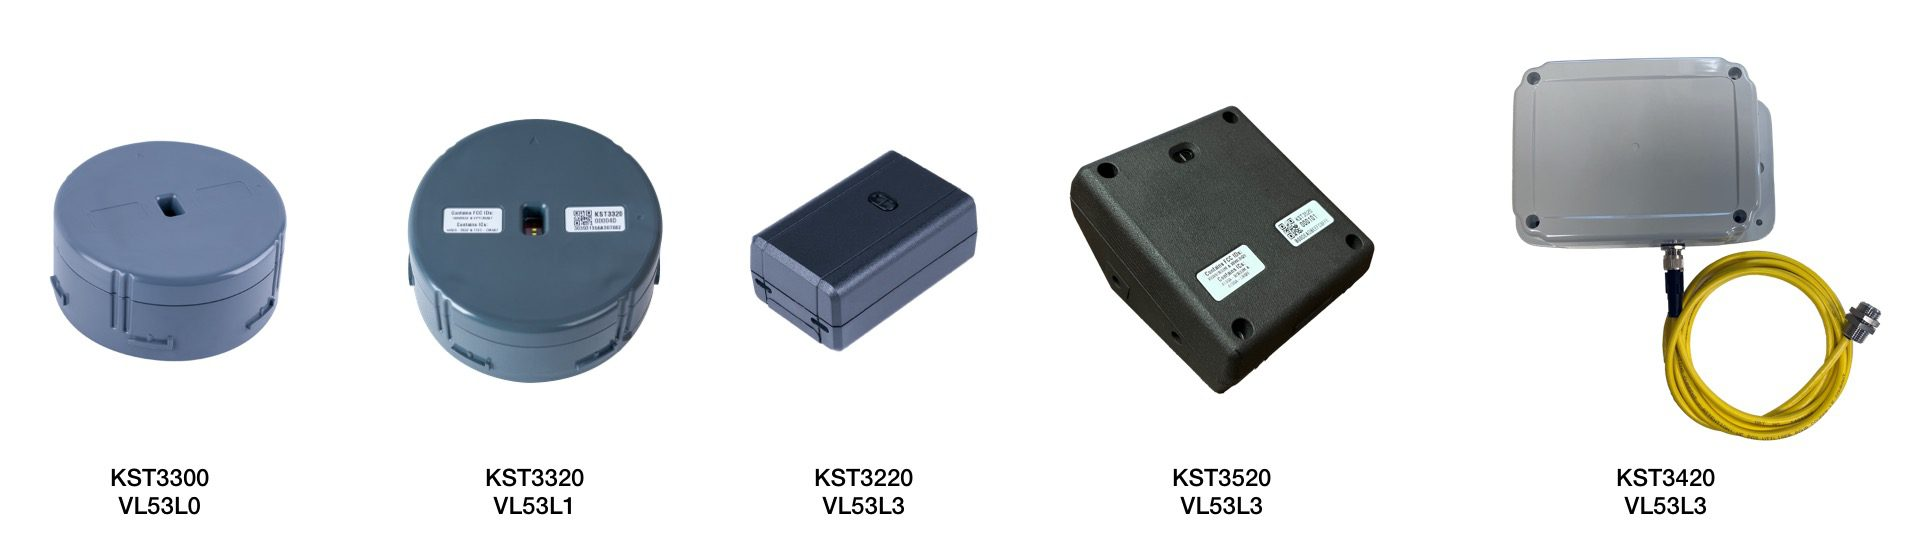 案例分享:KST3420和KST3220用ST的FlightSenseToF传感器和STM32快速开发原型